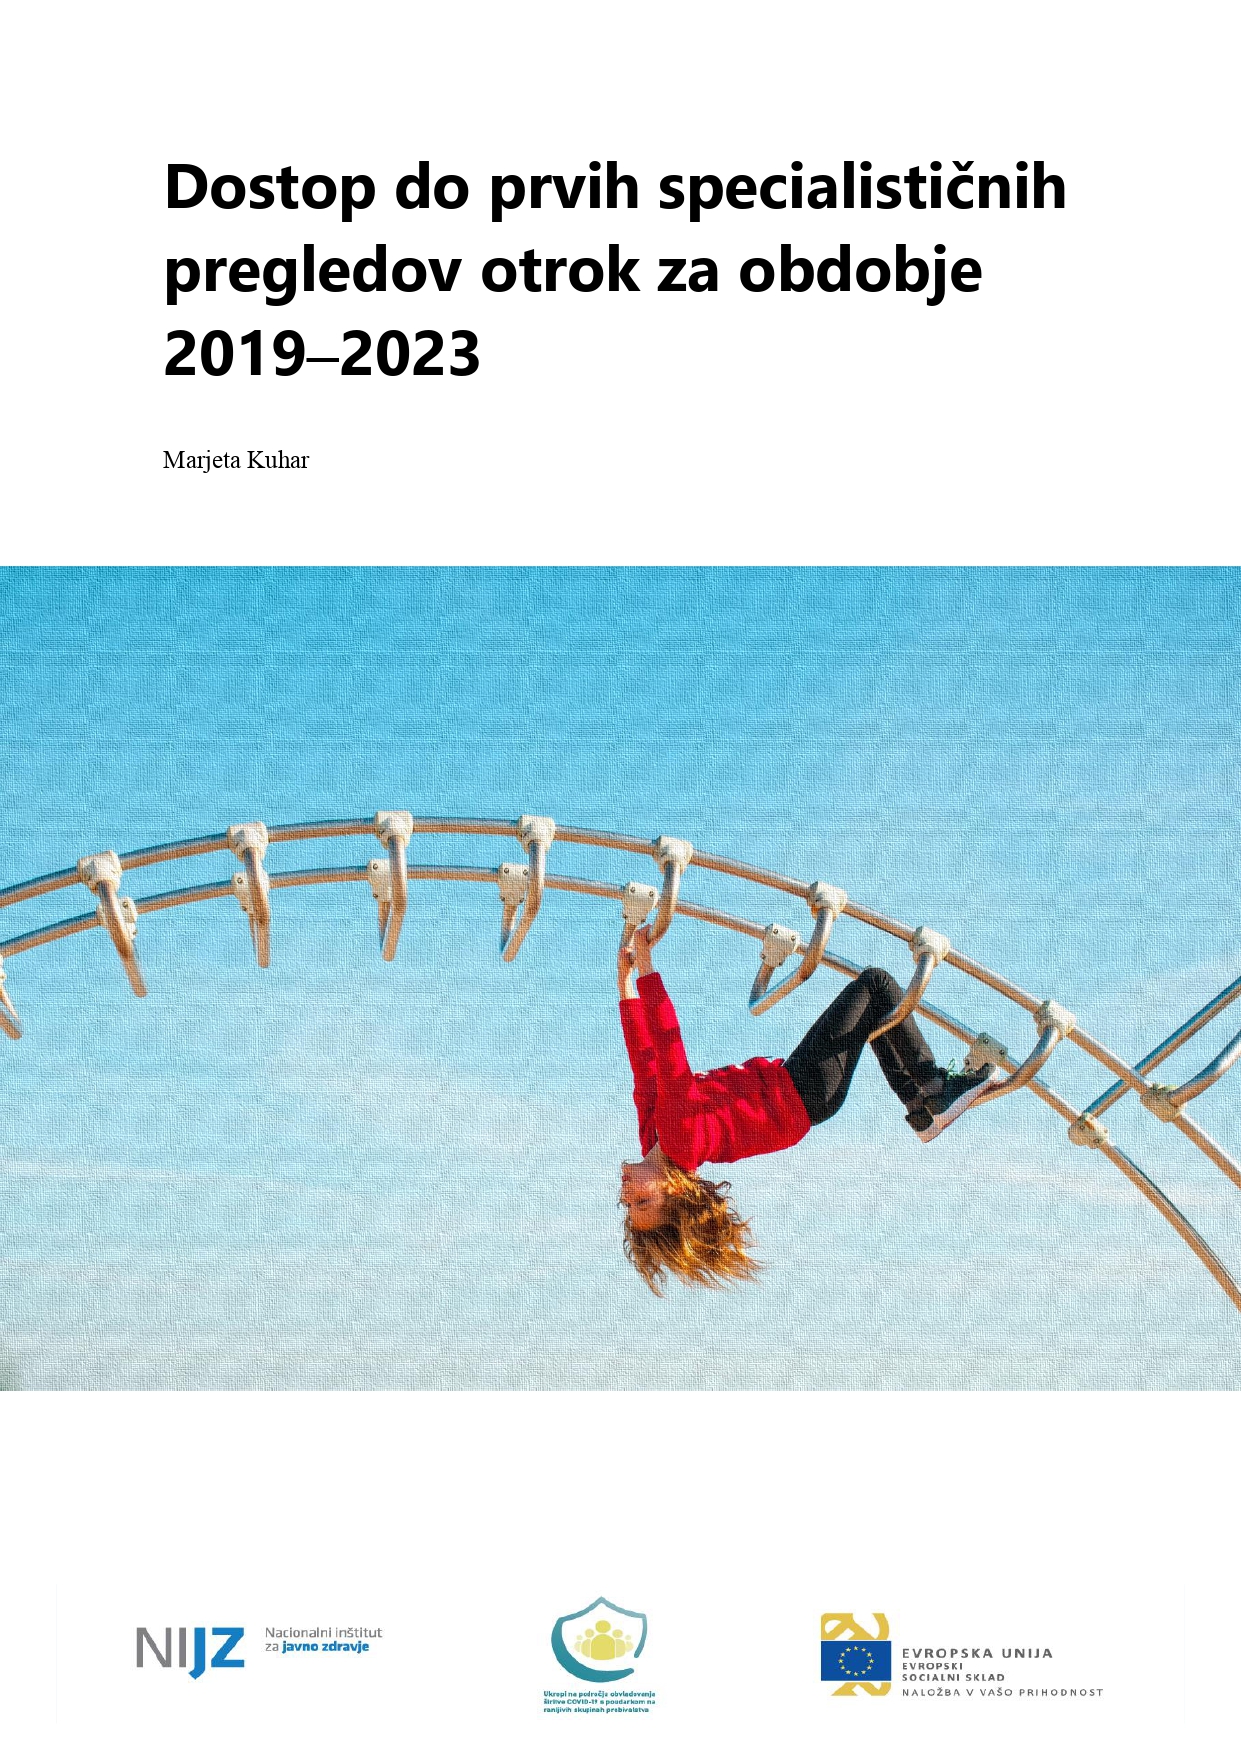 Dostop do prvih specialističnih pregledov otrok v Republiki Sloveniji za obdobje 2019–2023